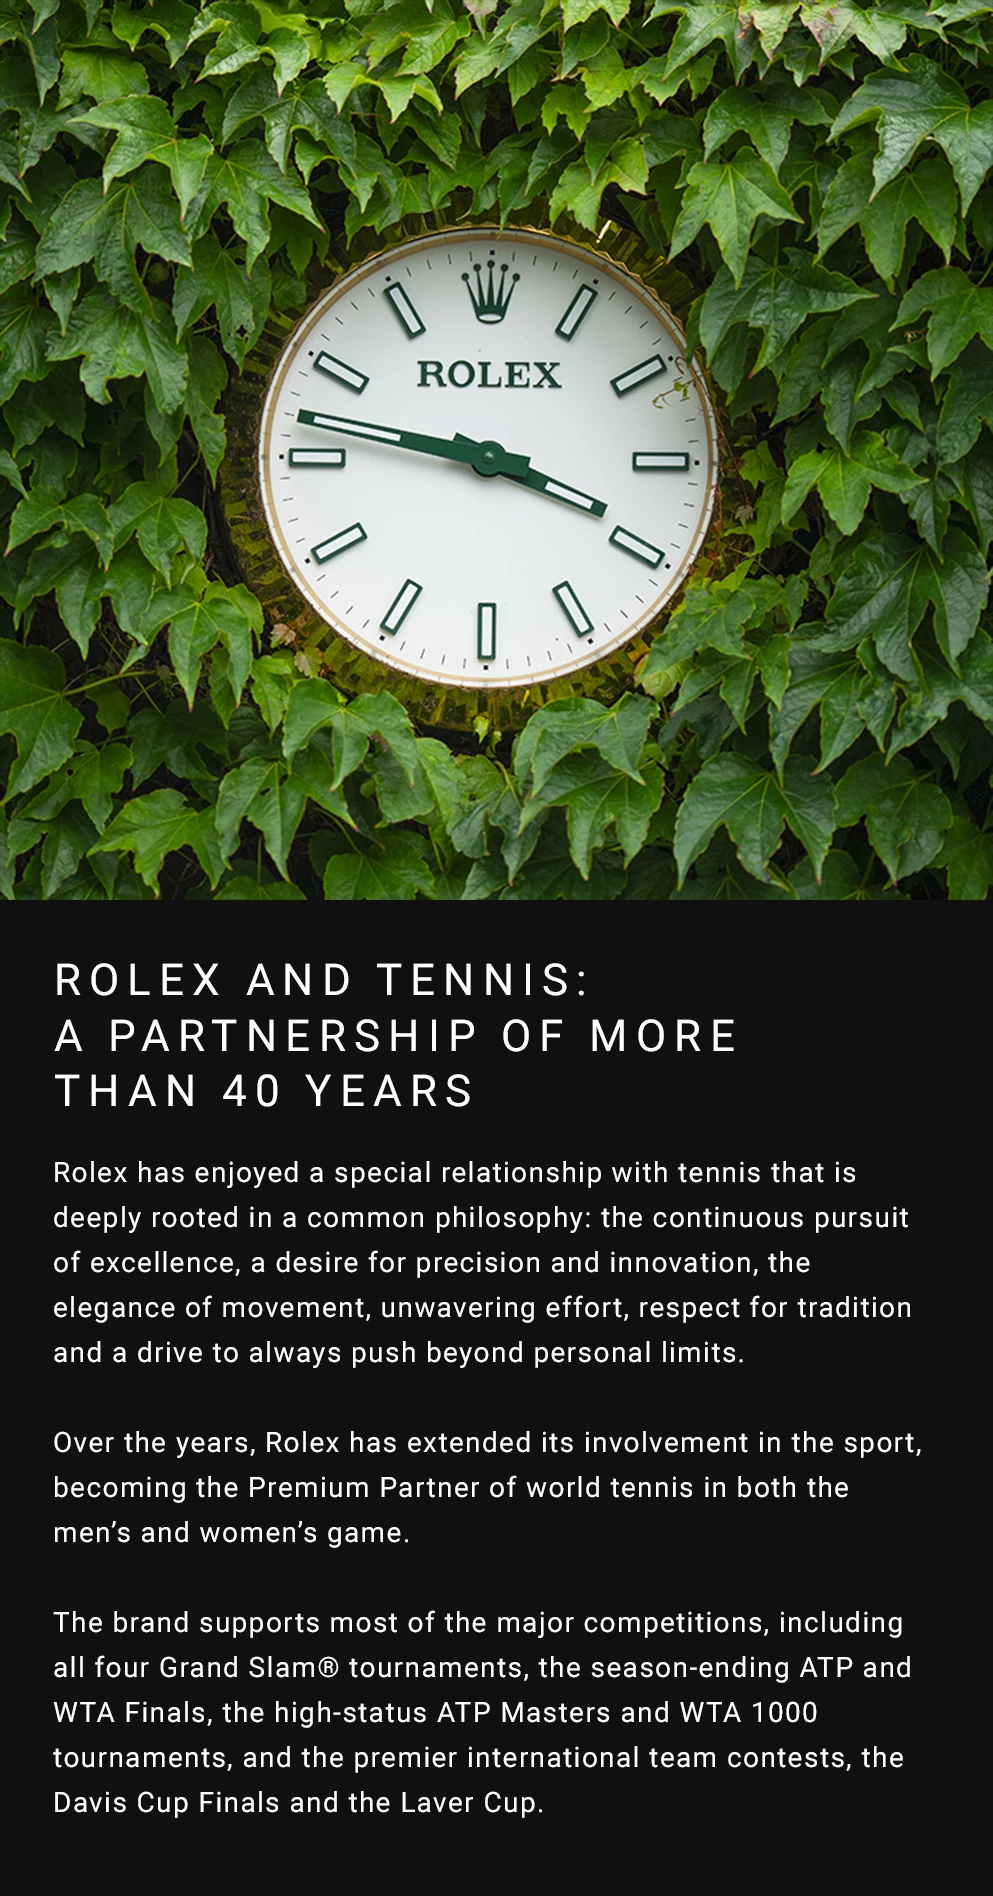 Rolex clock amongst the ivy at Wimbledon